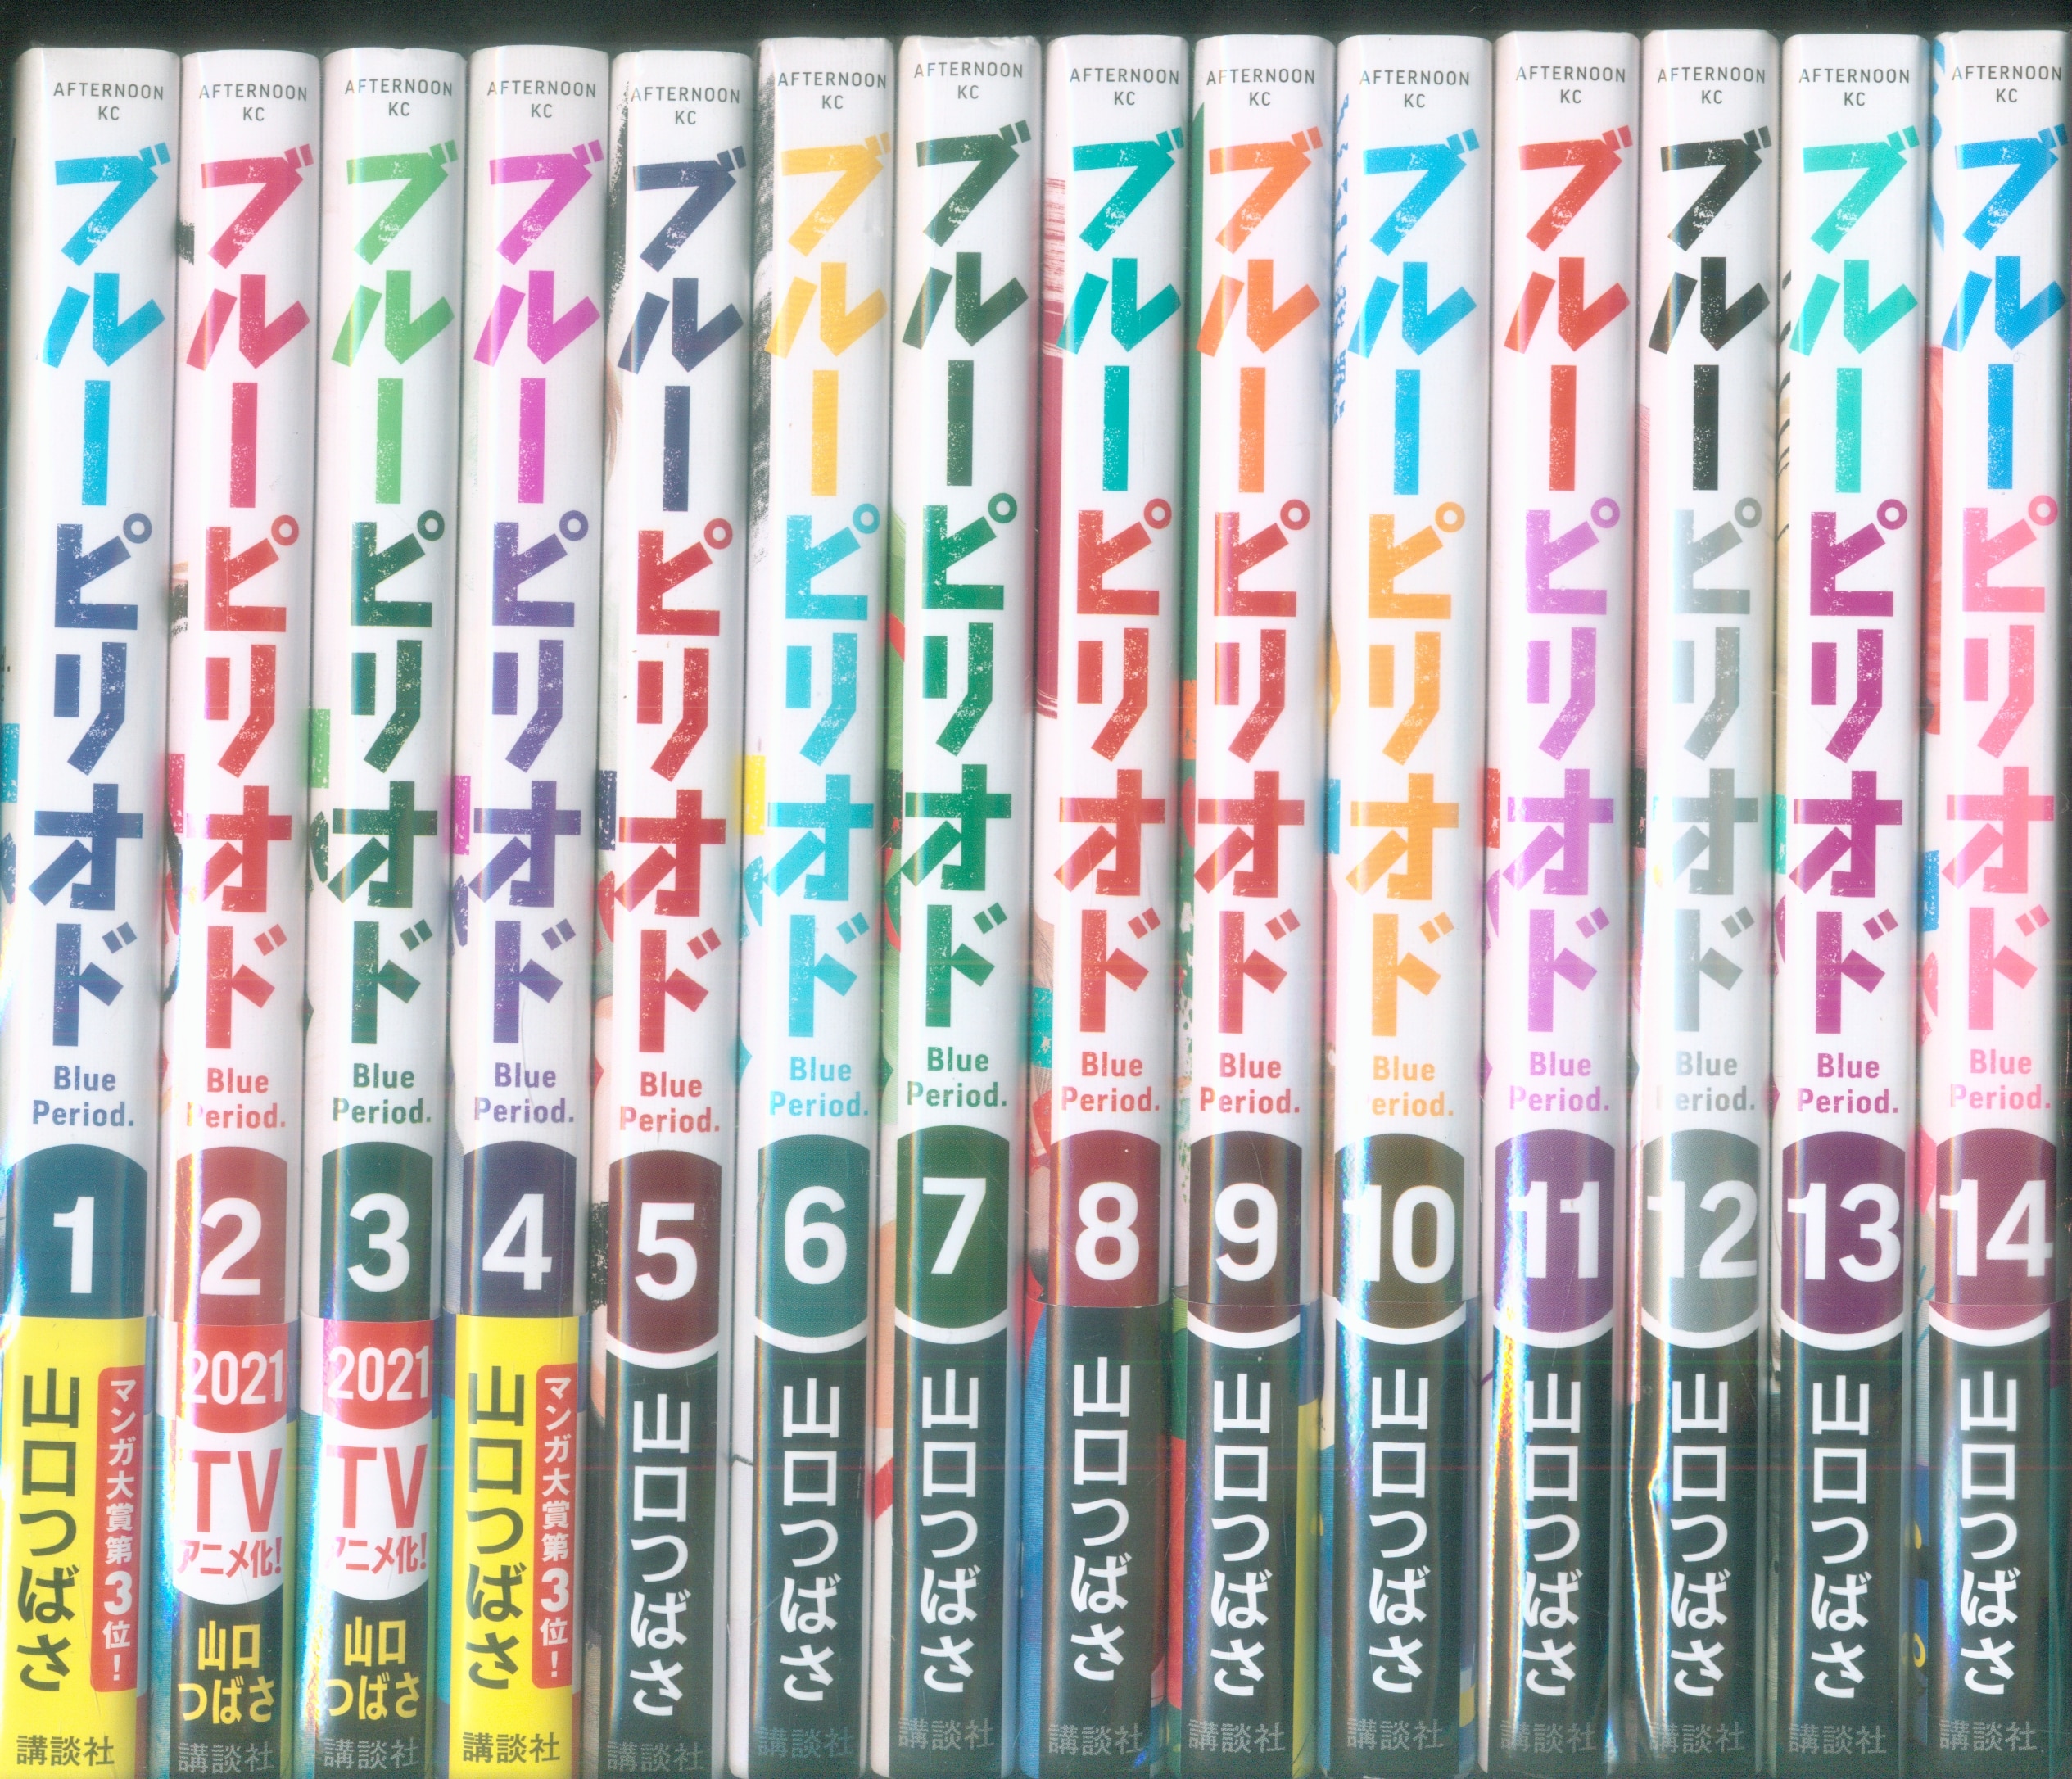 Kodansha Afternoon KC Yamaguchi Tsubasa blue period Volume 1-14 latest set